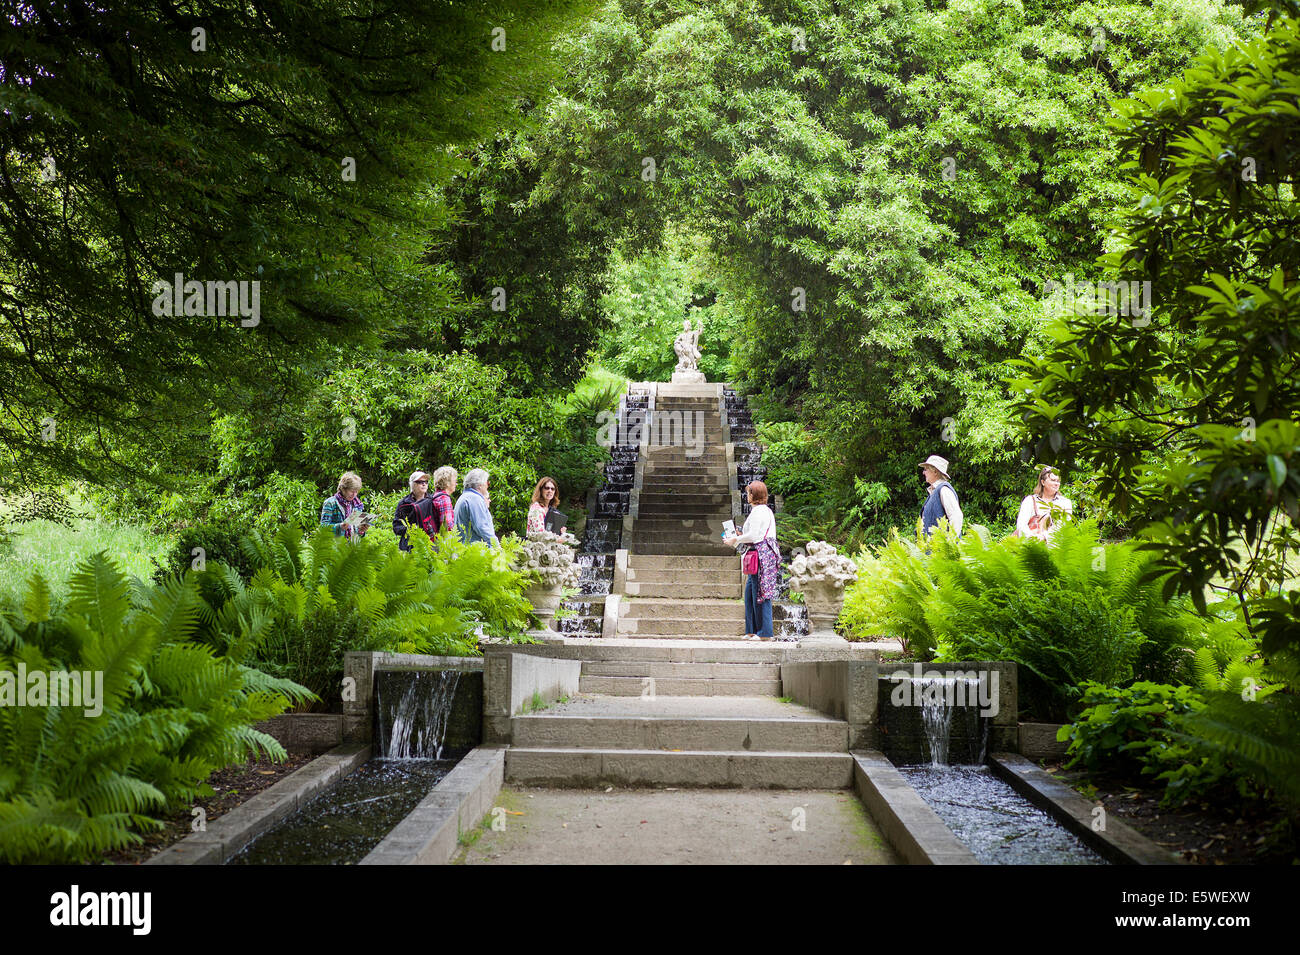 Guida con i visitatori di un verdeggiante giardino paesaggistico con acqua ruscelli a Holker Hall in Cumbria Regno Unito Foto Stock